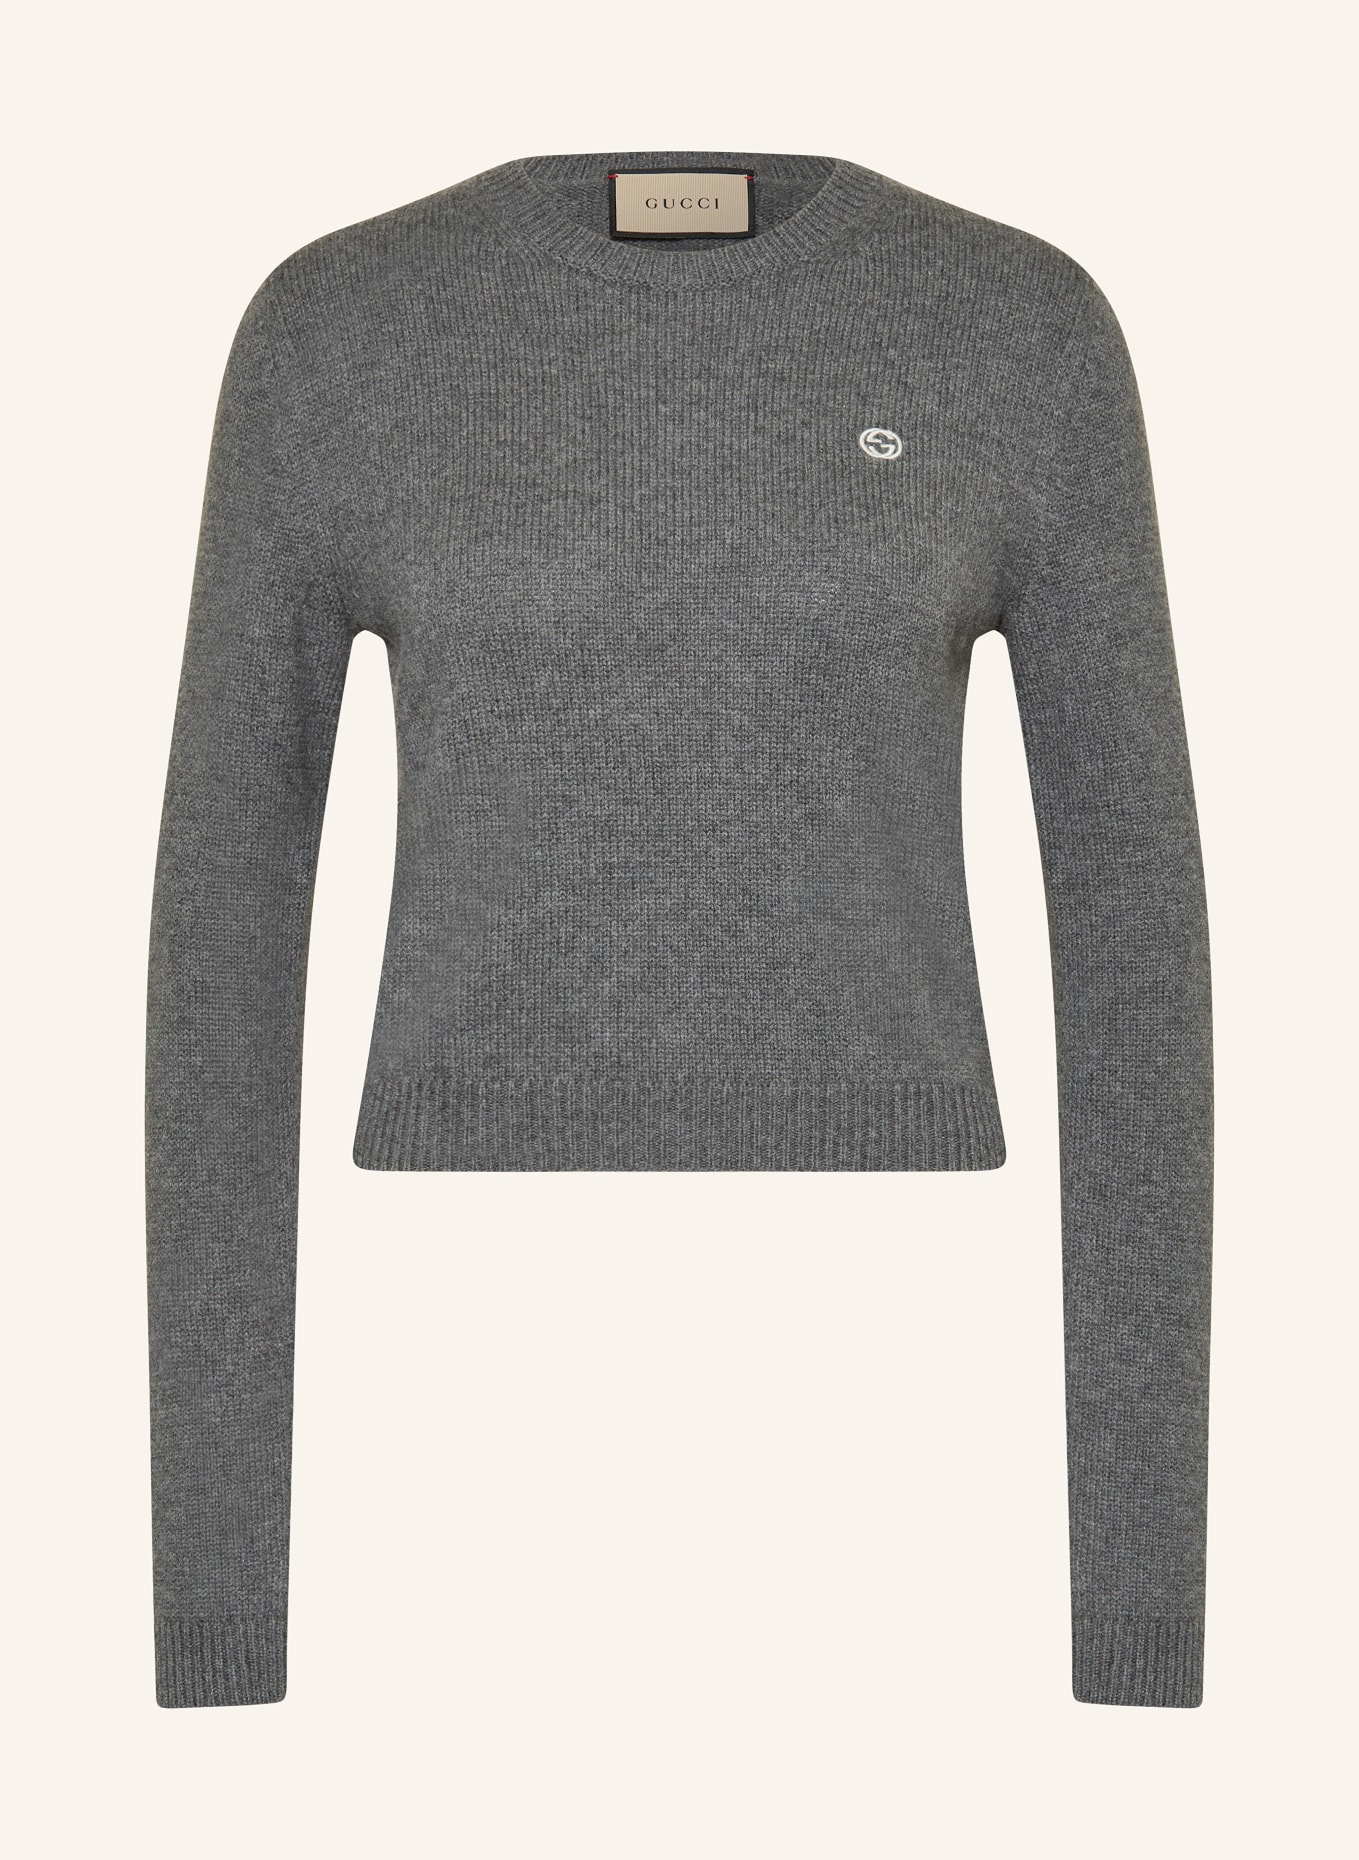 GUCCI Cropped-Pullover, Farbe: GRAU (Bild 1)